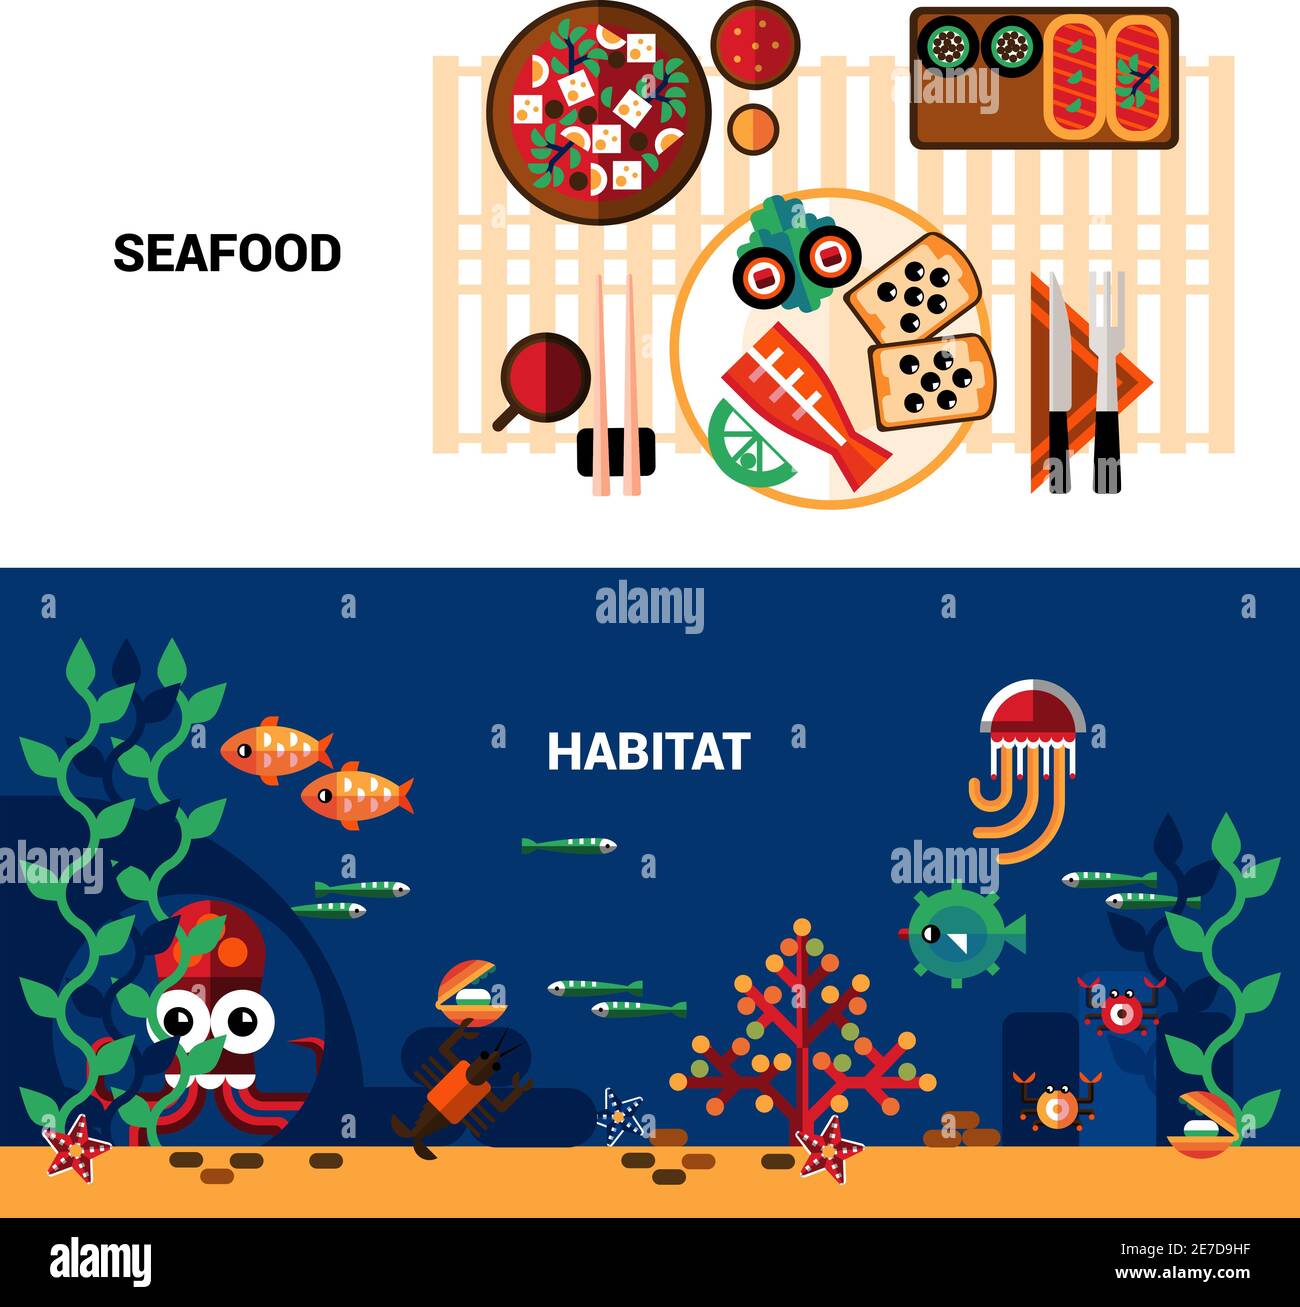 Ensemble de bannières horizontales de vie marine et table servi avec illustration vectorielle plate de fruits de mer Illustration de Vecteur